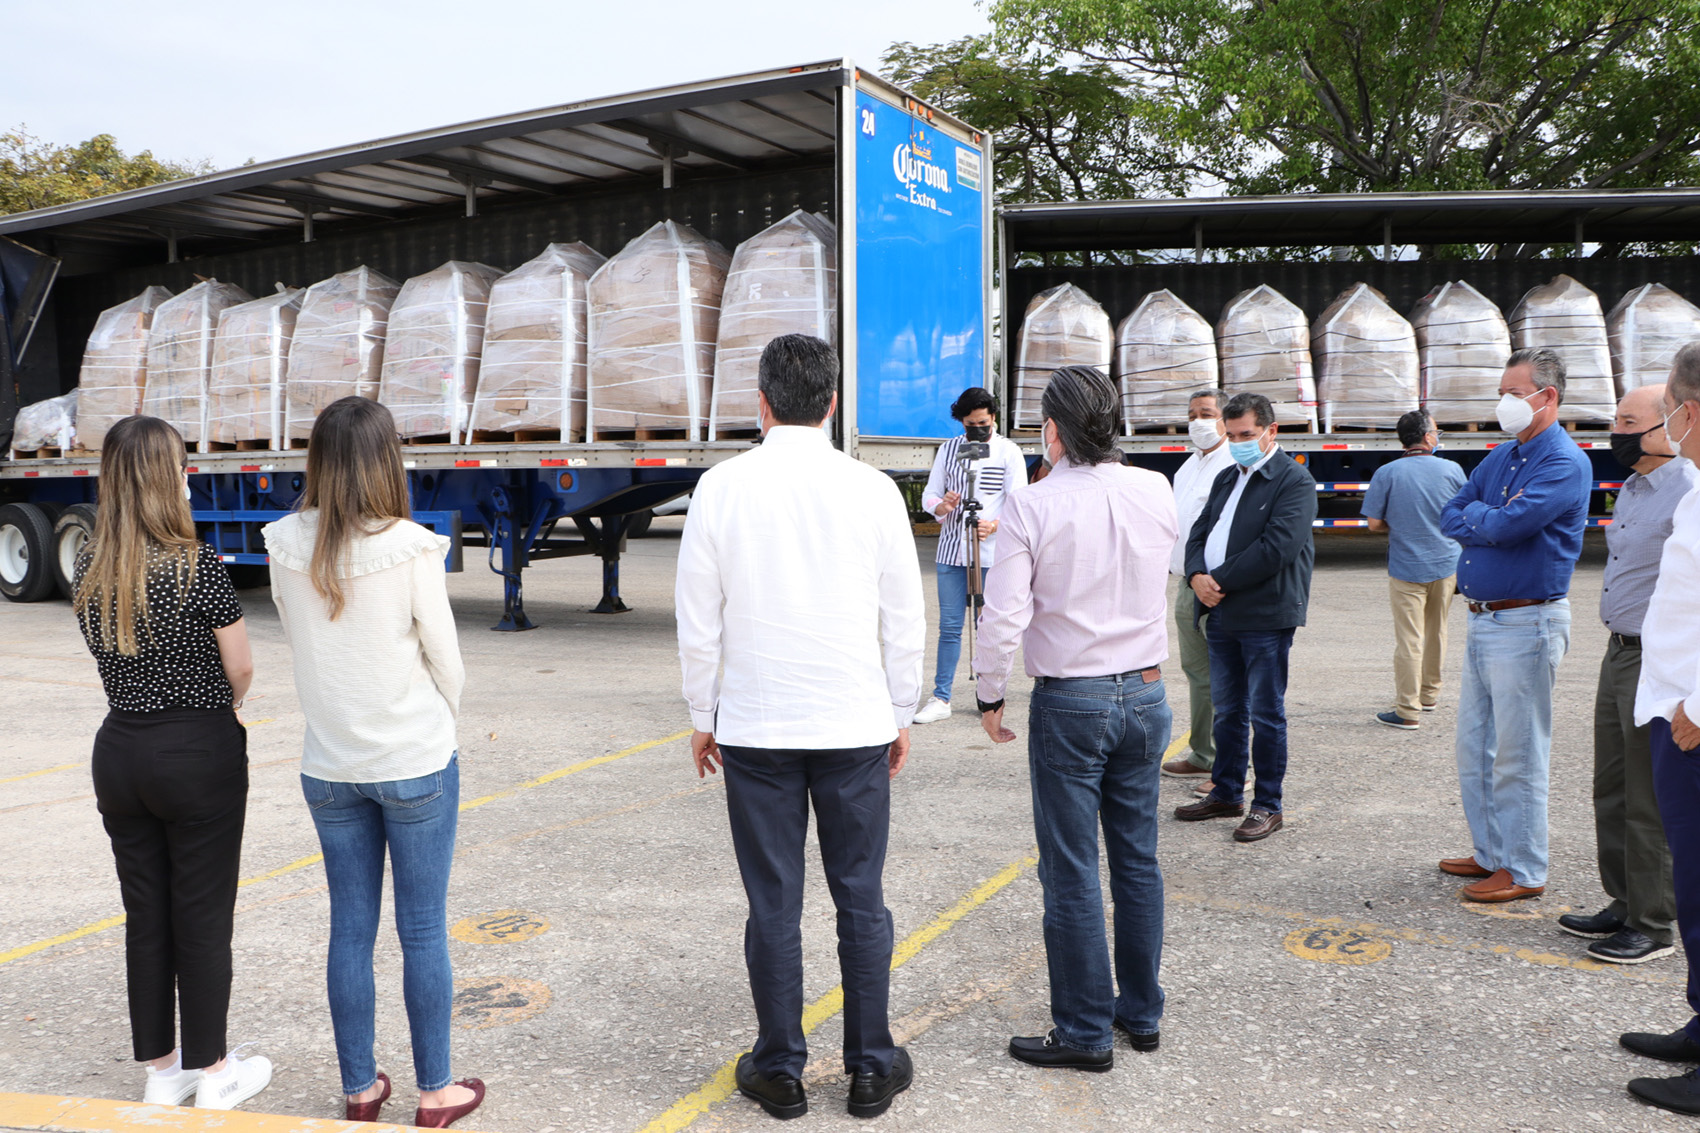 Gobernador de Chiapas agradece donación de cinco mil paquetes alimentarios en beneficio de la población en situación de emergencia por COVID-19 y lluvias